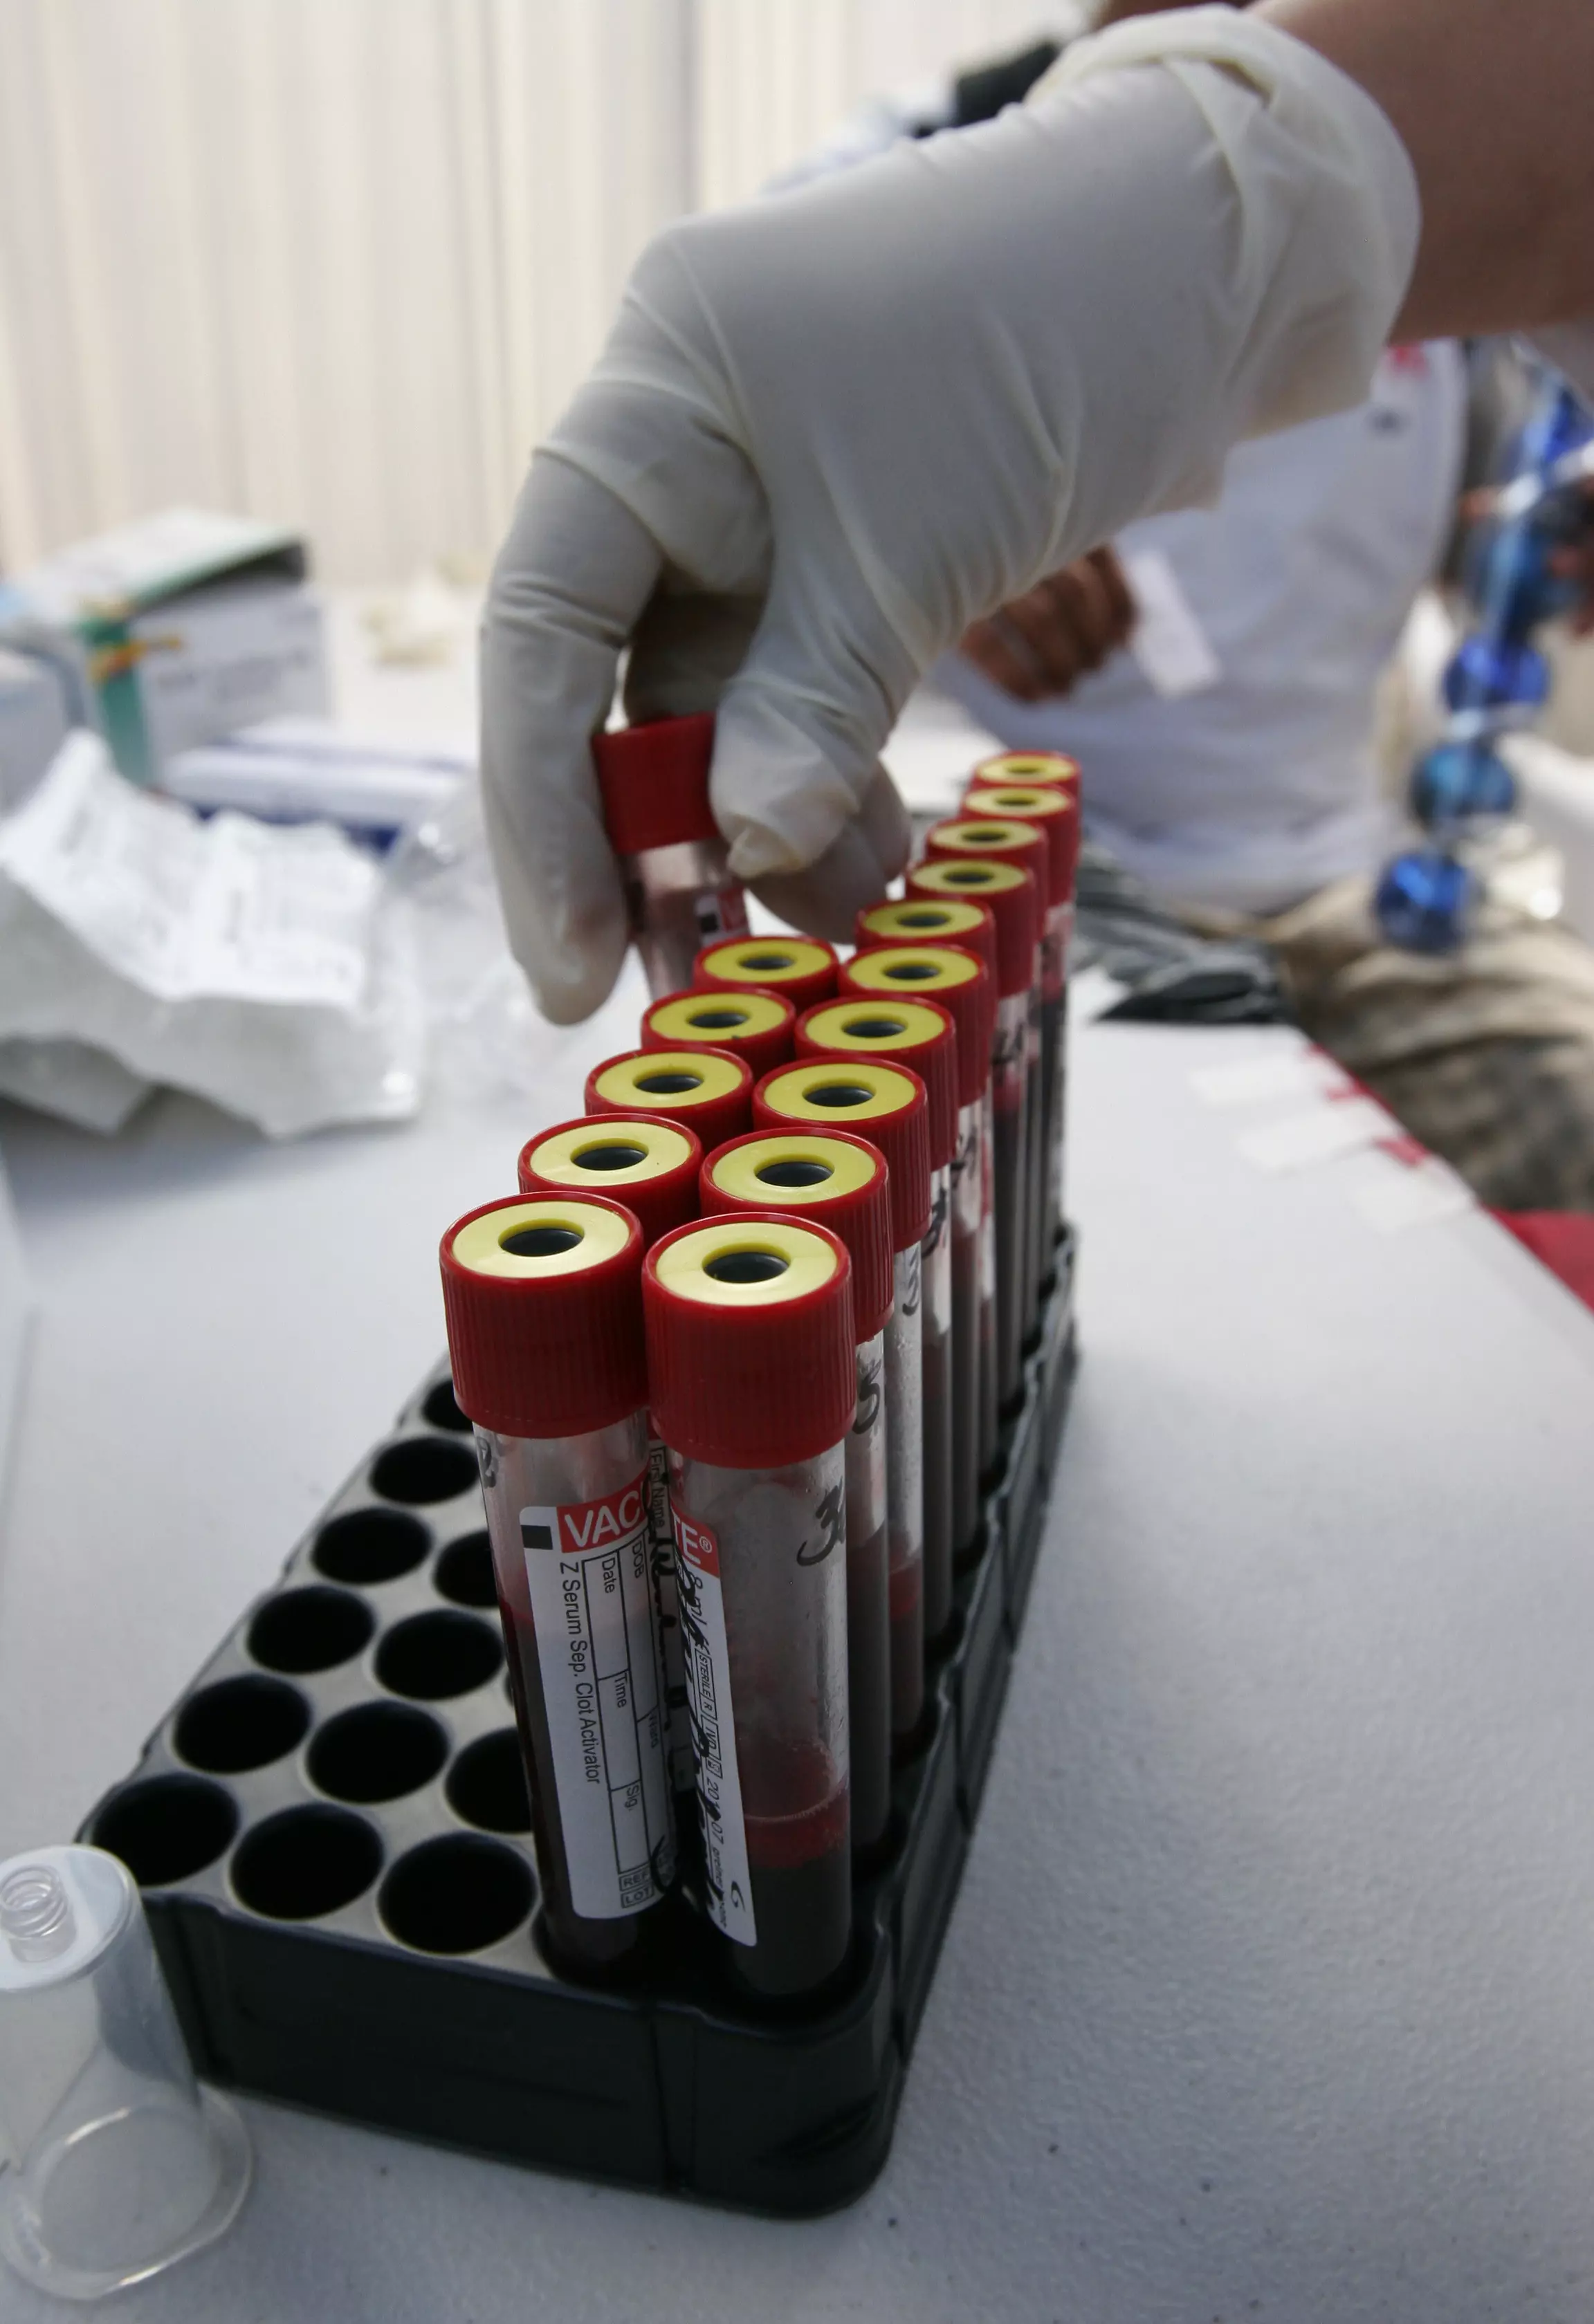 "בעיה מיוחדת בדם". מבחנות נשלחות לבדיקת דם לגילוי ה HIV